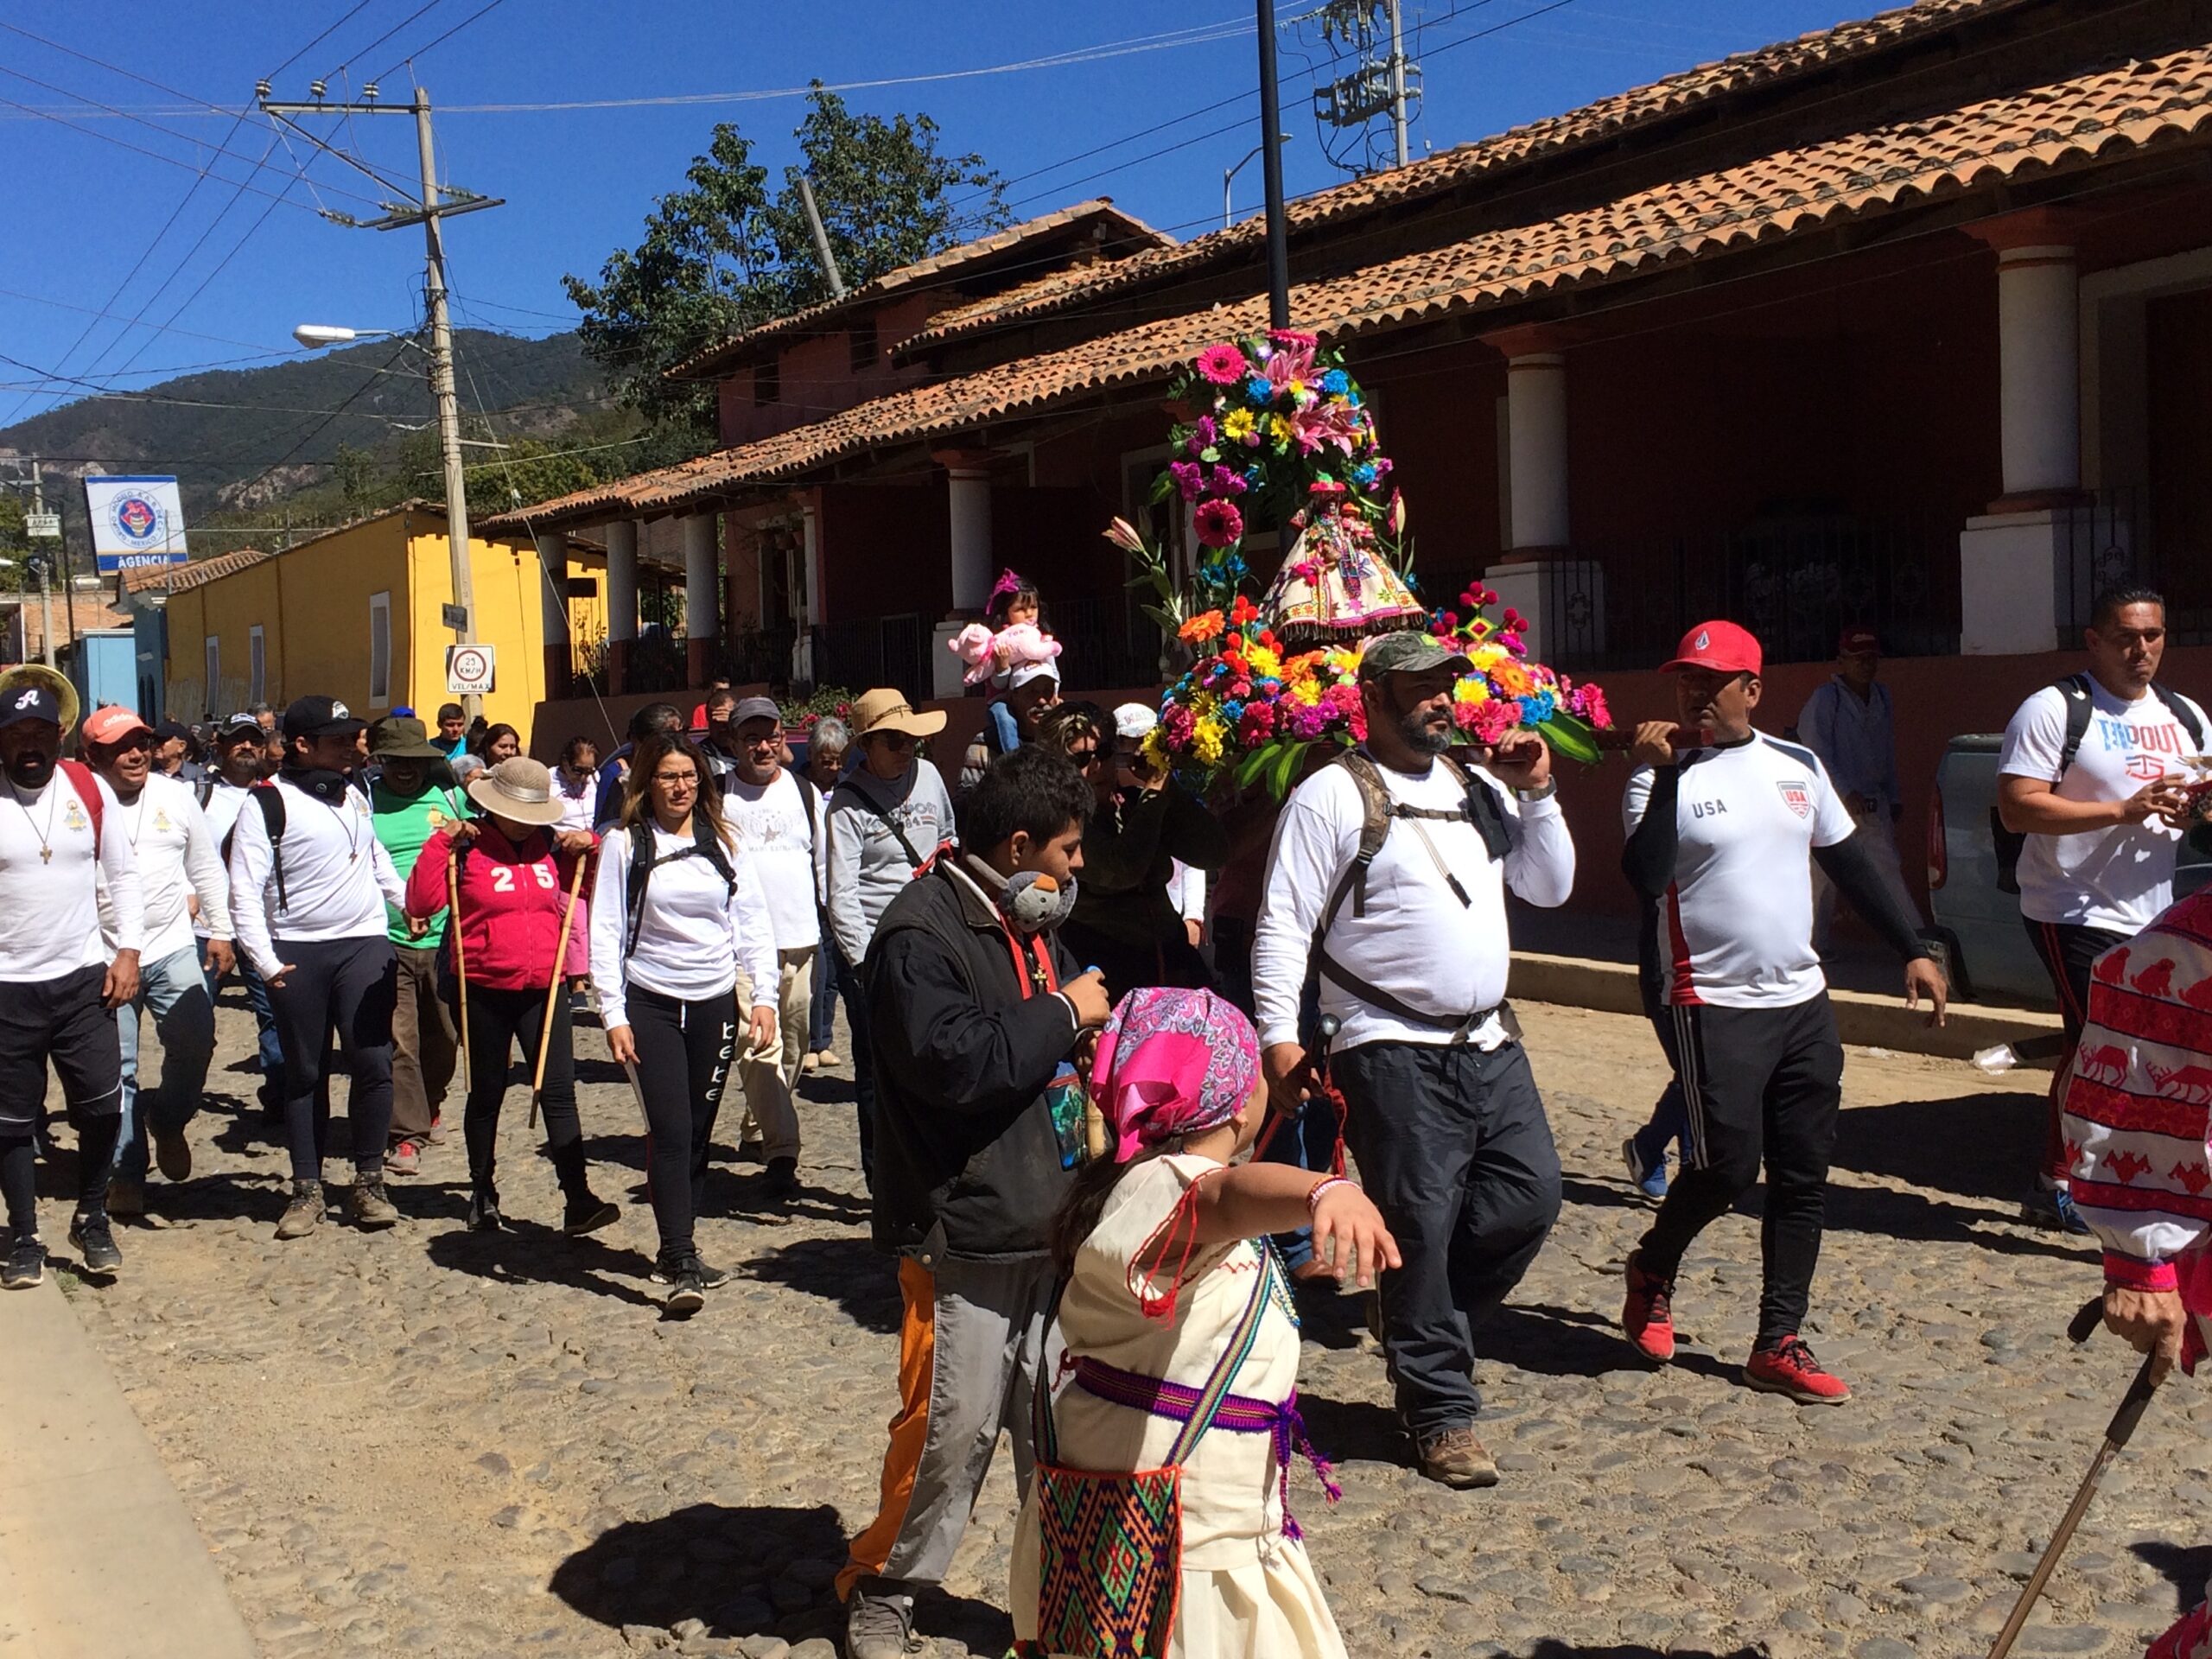 Pilgrimage to a Mexican Shrine - Peregrinación a un Santuario Mexicano